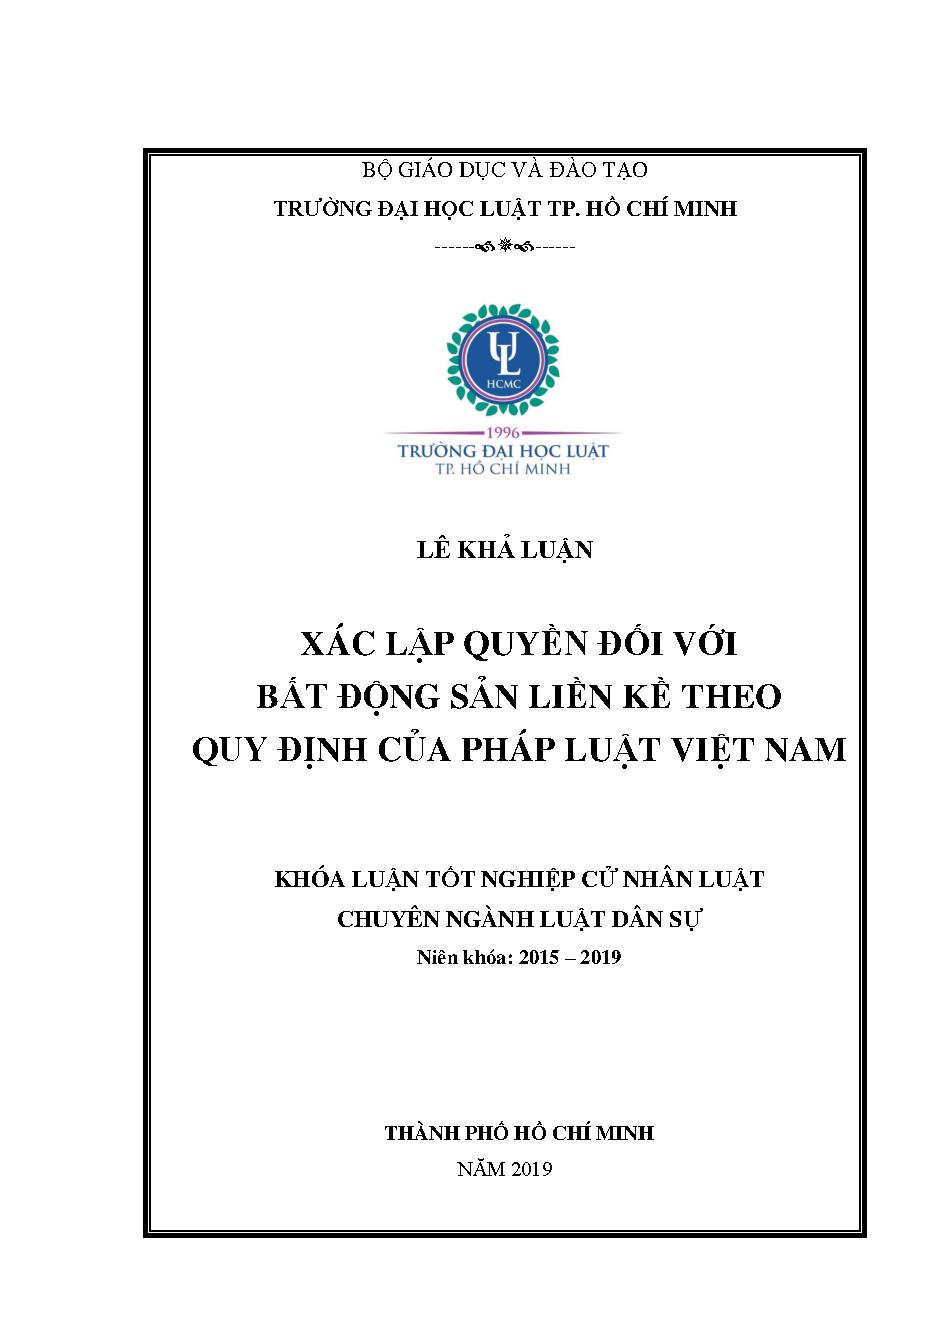 Xác lập quyền đối với bất động sản liền kề theo quy định của pháp luật Việt Nam